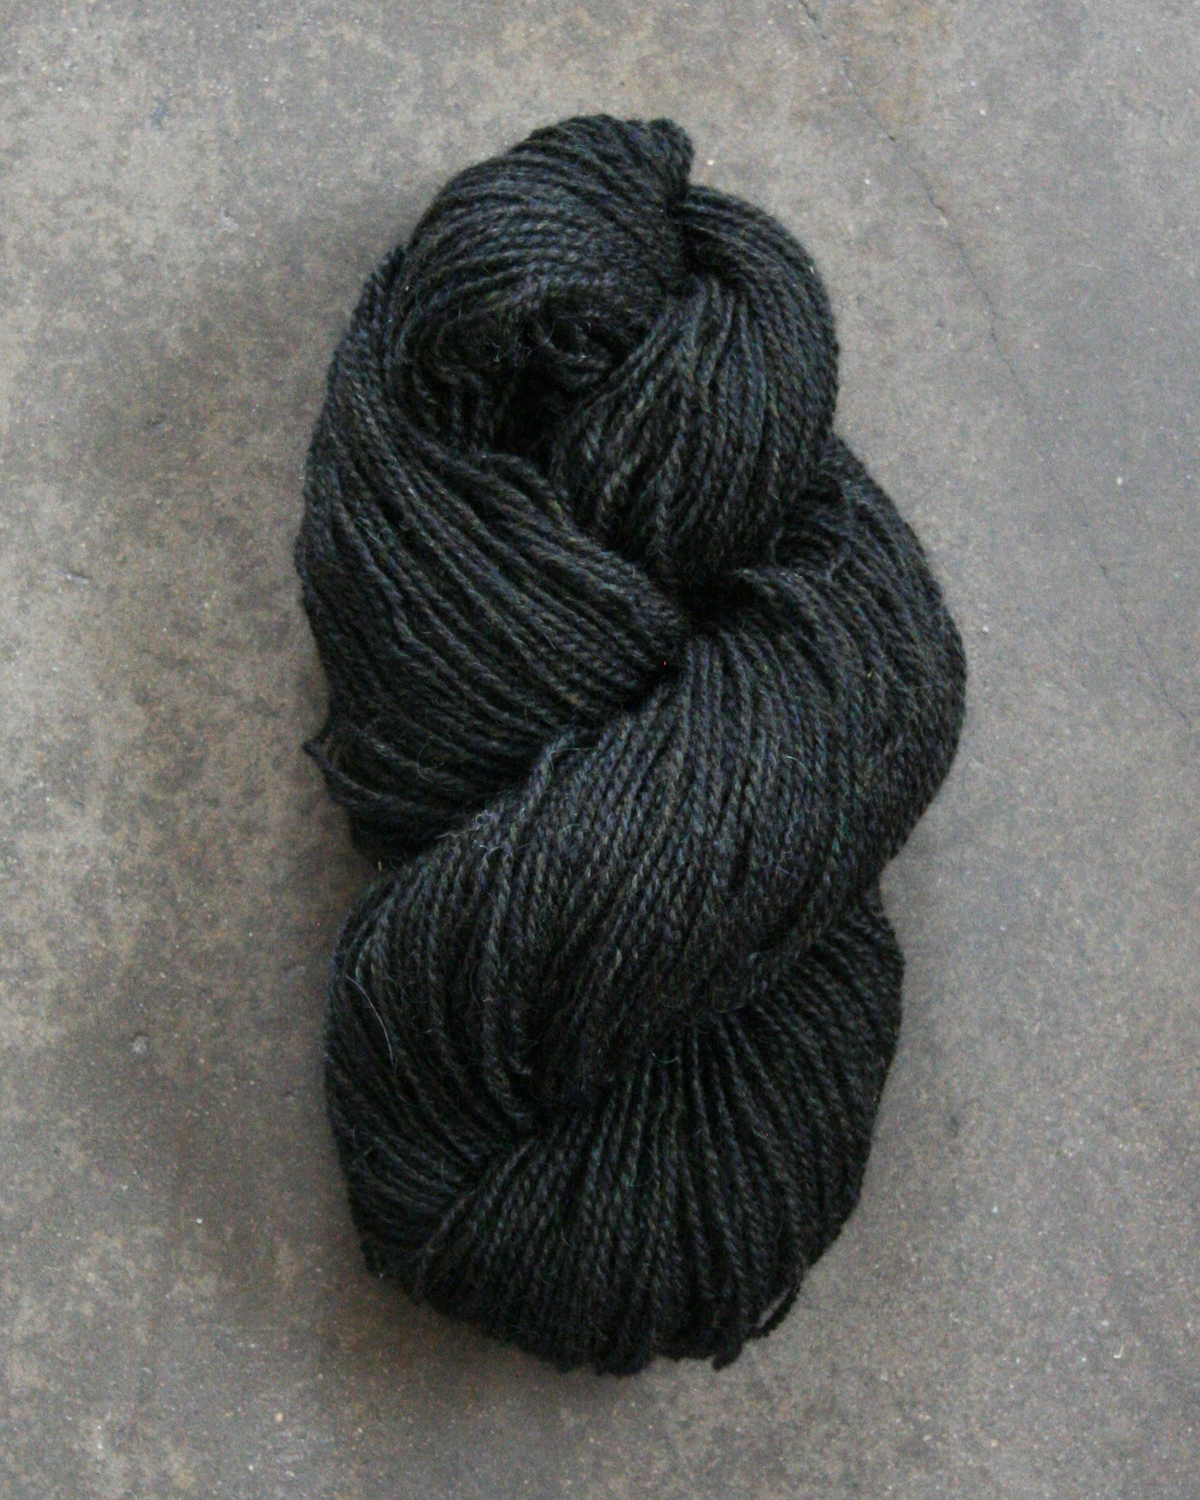 Filtmakeriets tweed 2-trådigt Svart